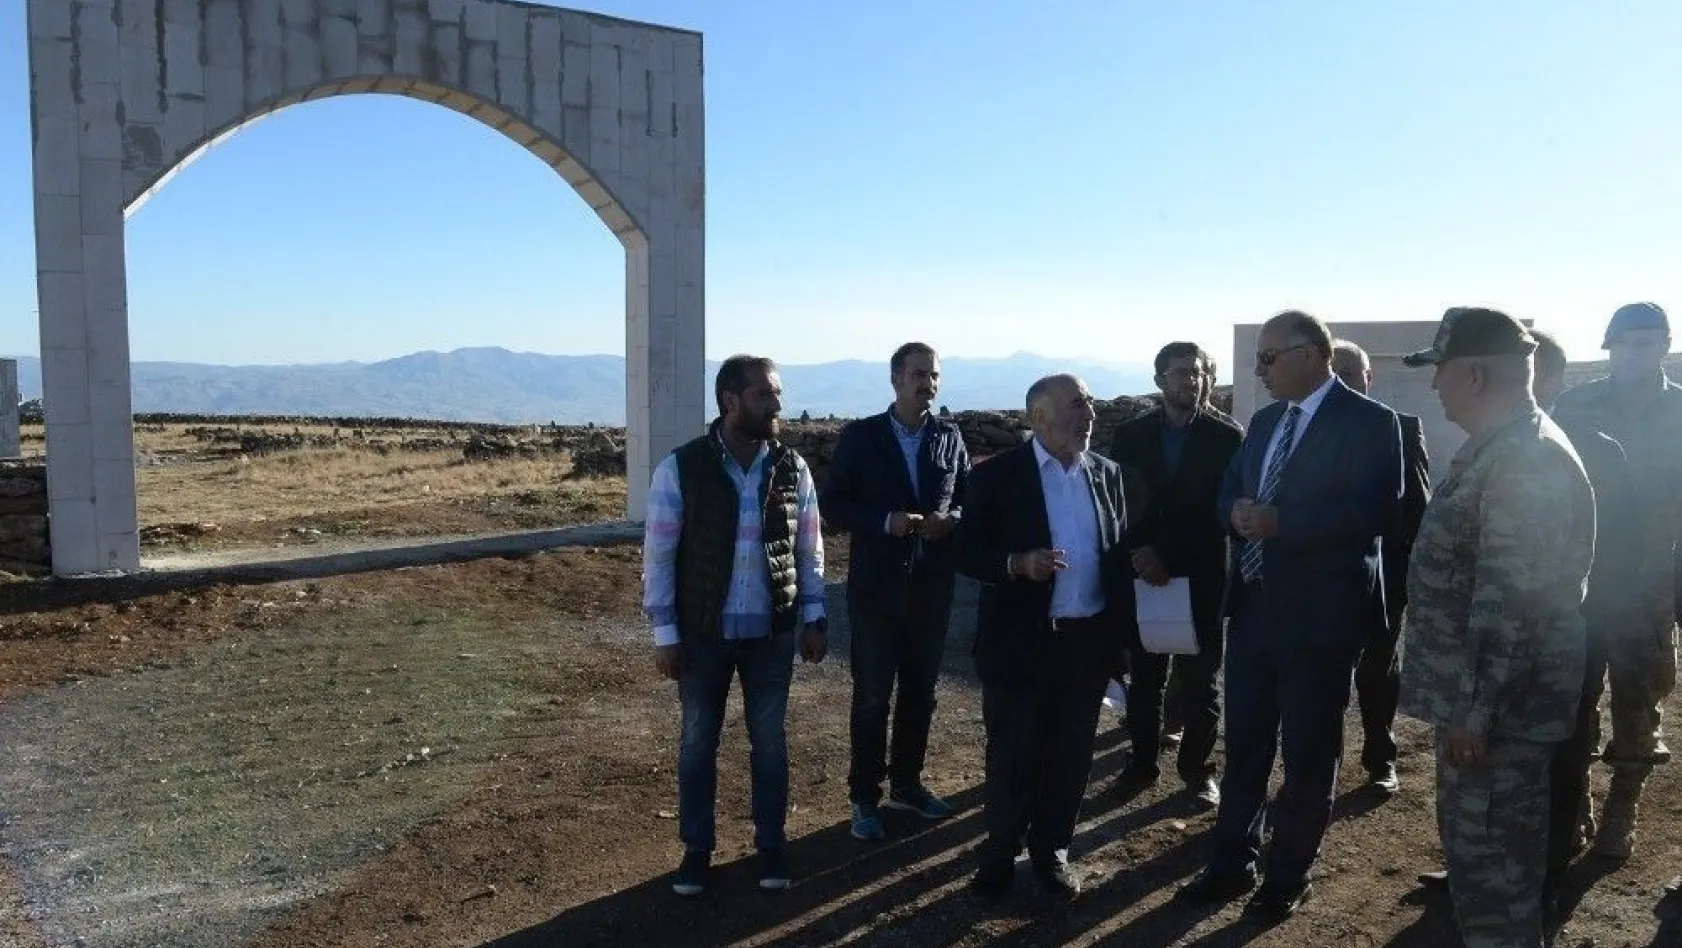 Vali Azizoğlu: 'Erzurum'un 57'inci alayı Kargapazar müfrezesidir'
